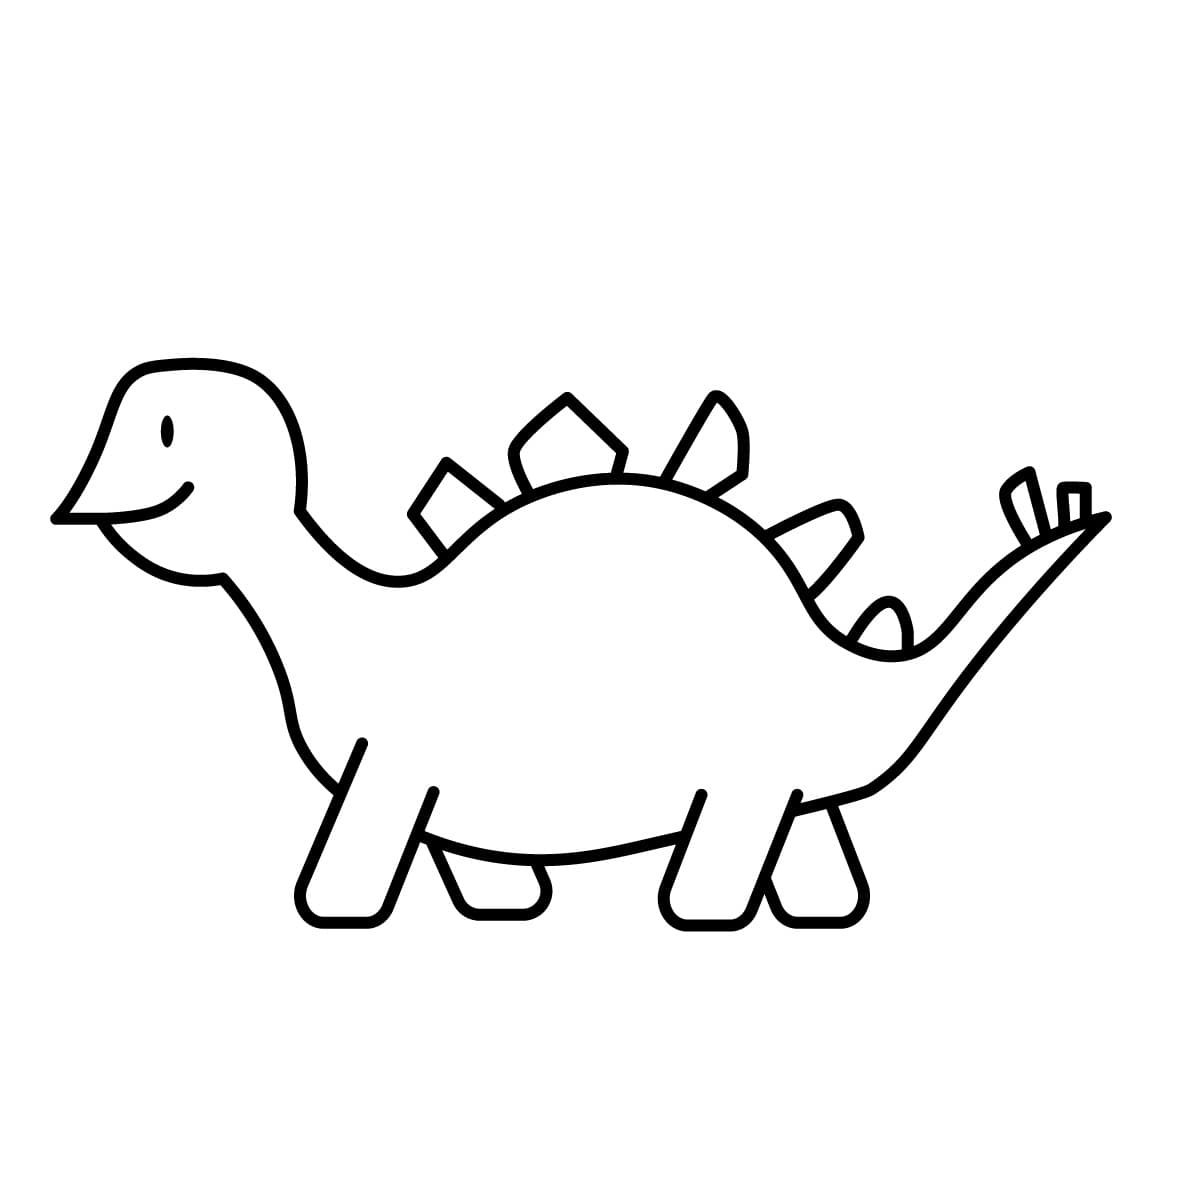 Dibujo de dinosaurio para colorear e imprimir - Dibujos y colores